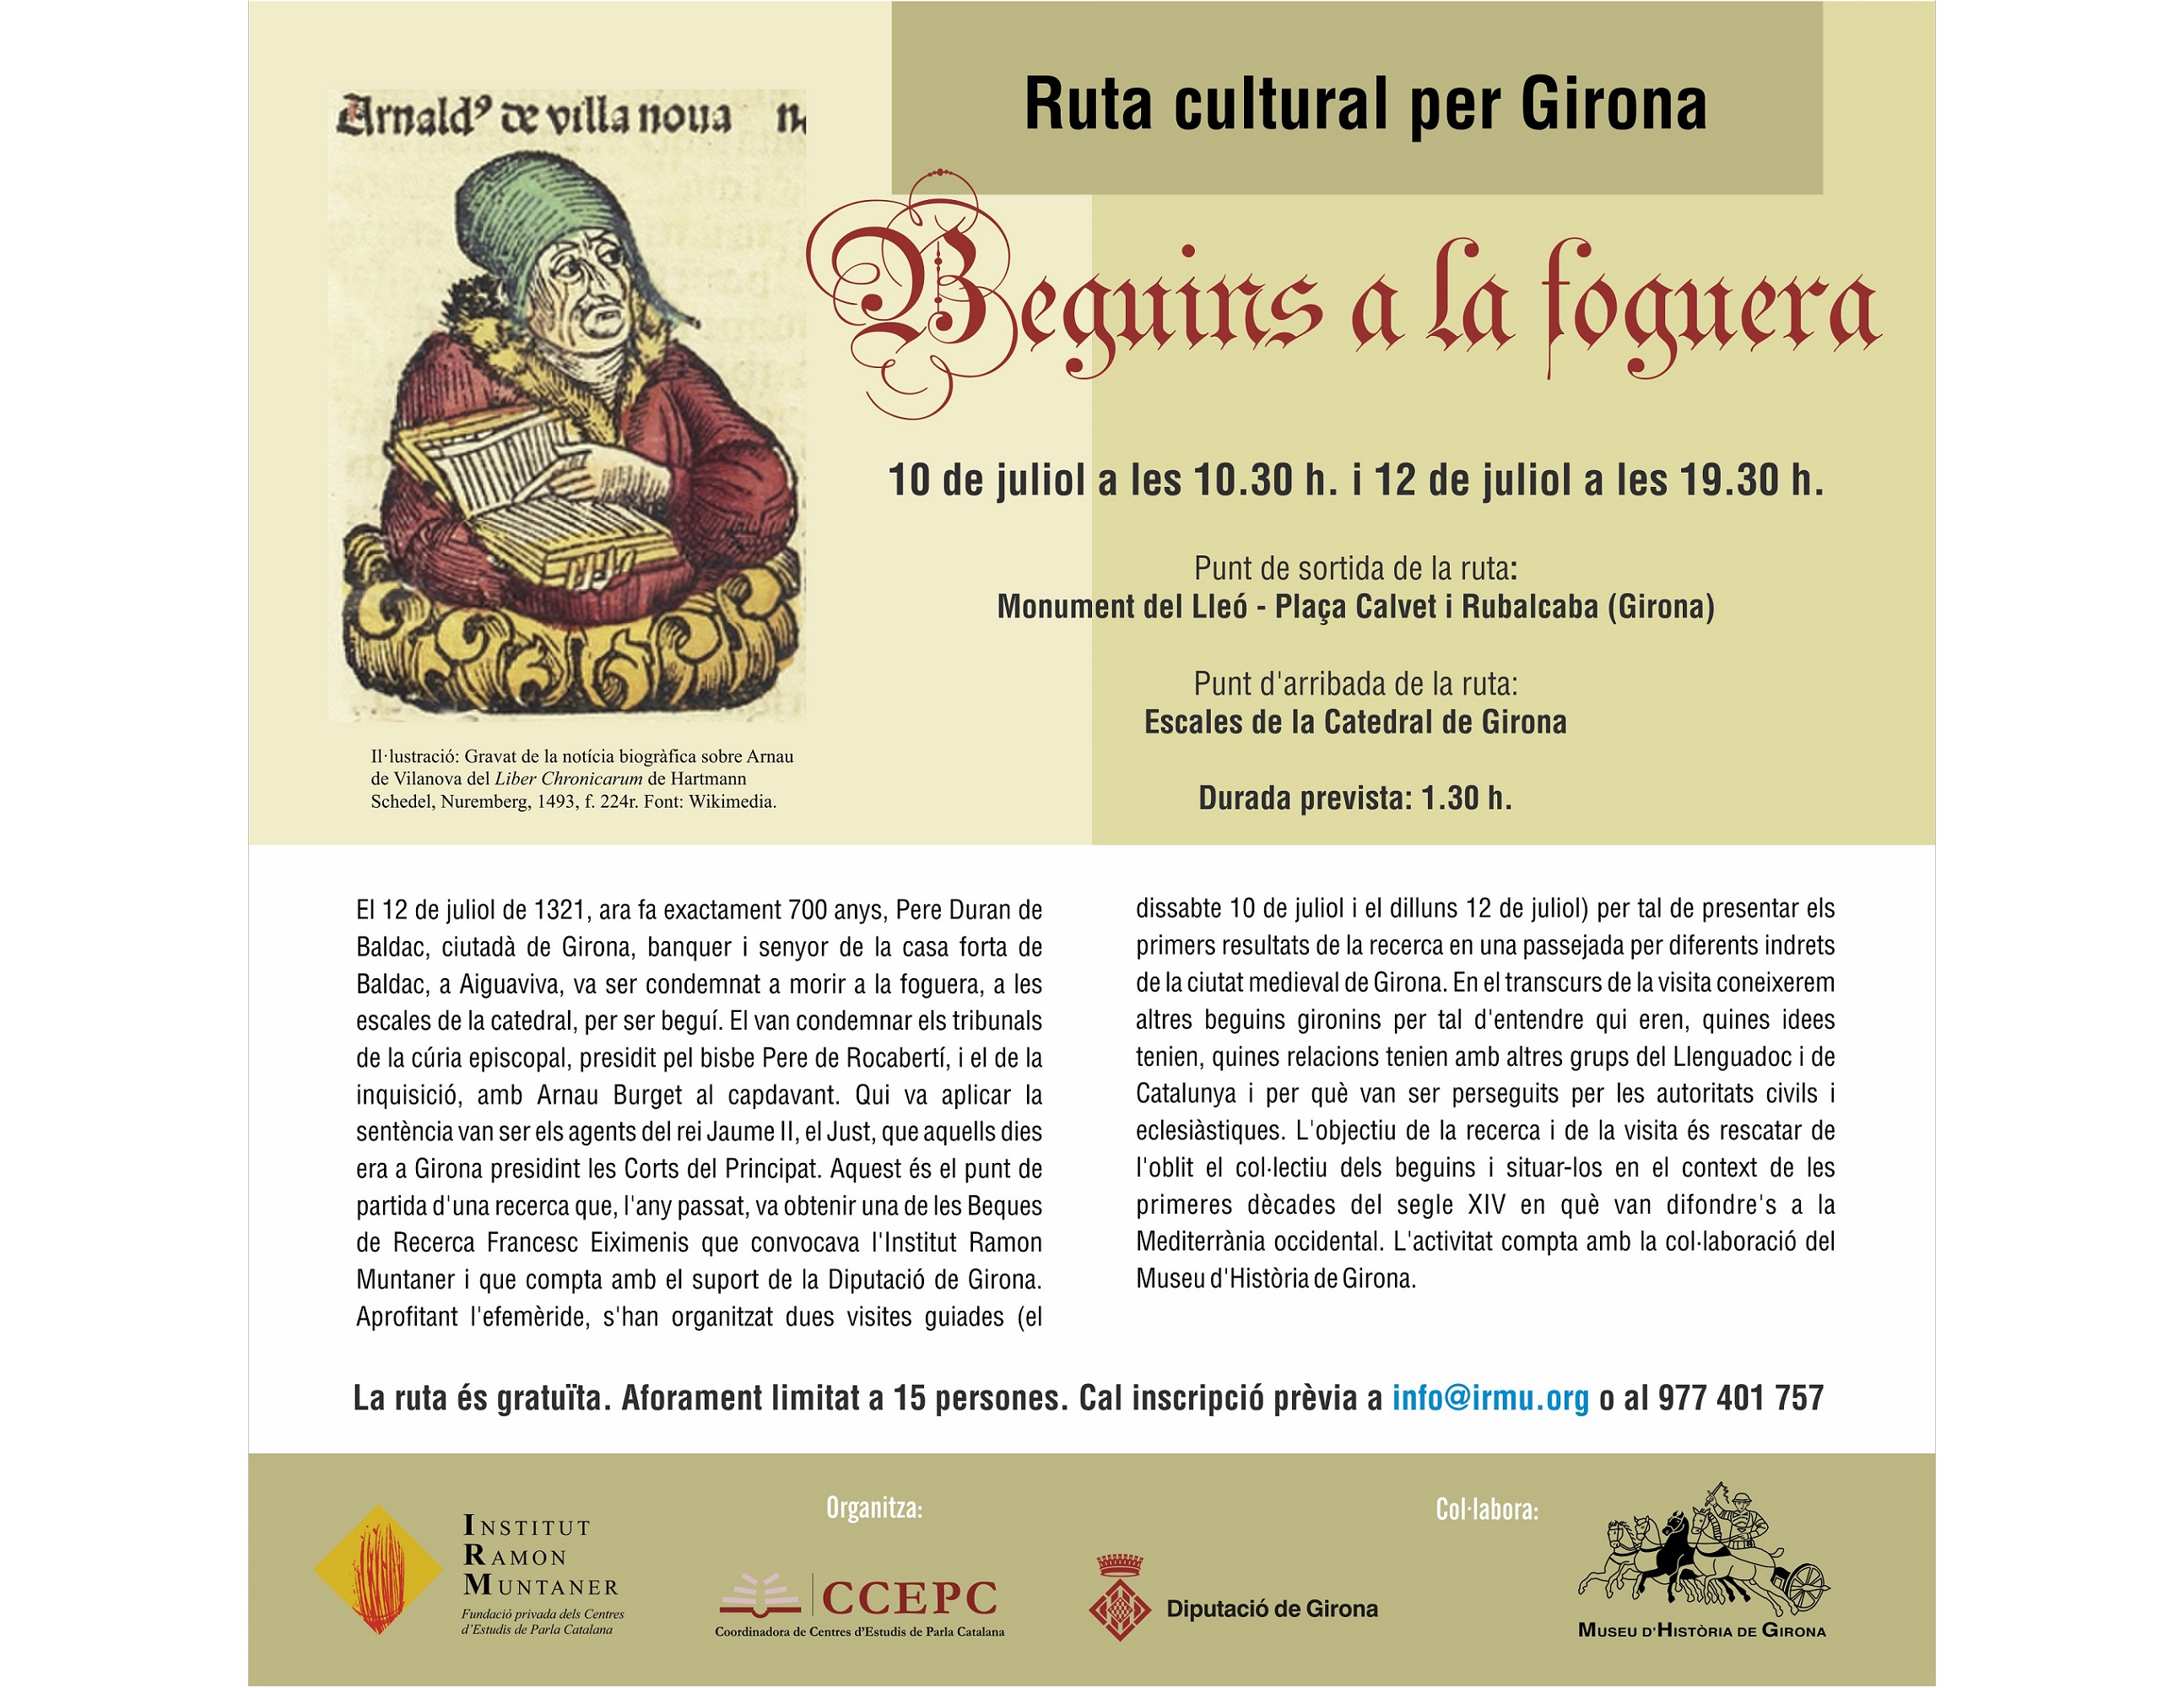 Us convidem a la ruta cultural per Girona "Beguins a la foguera"